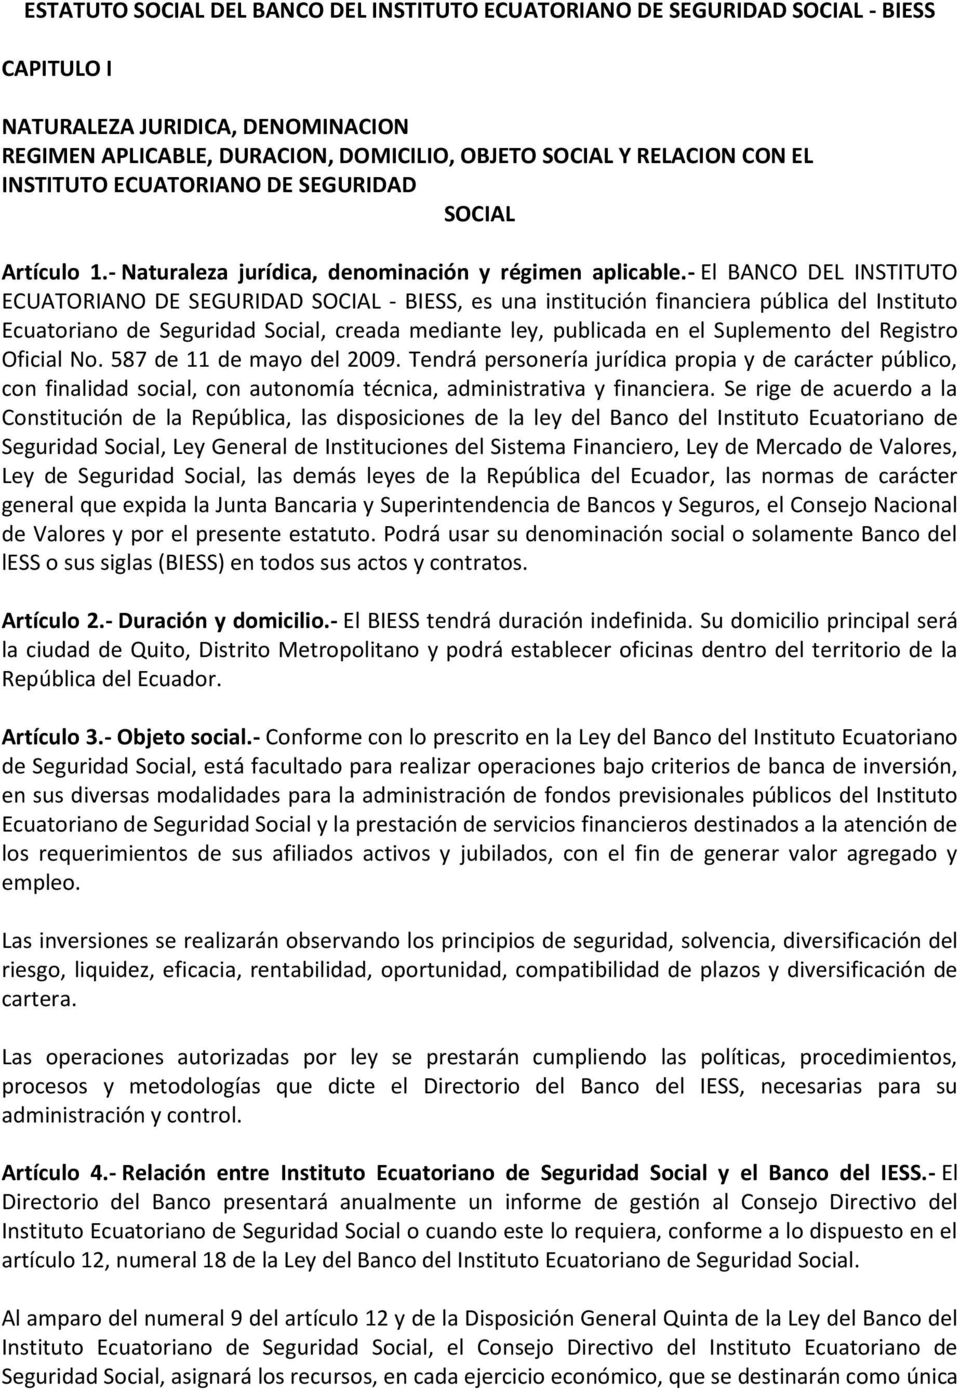 - El BANCO DEL INSTITUTO ECUATORIANO DE SEGURIDAD SOCIAL - BIESS, es una institución financiera pública del Instituto Ecuatoriano de Seguridad Social, creada mediante ley, publicada en el Suplemento